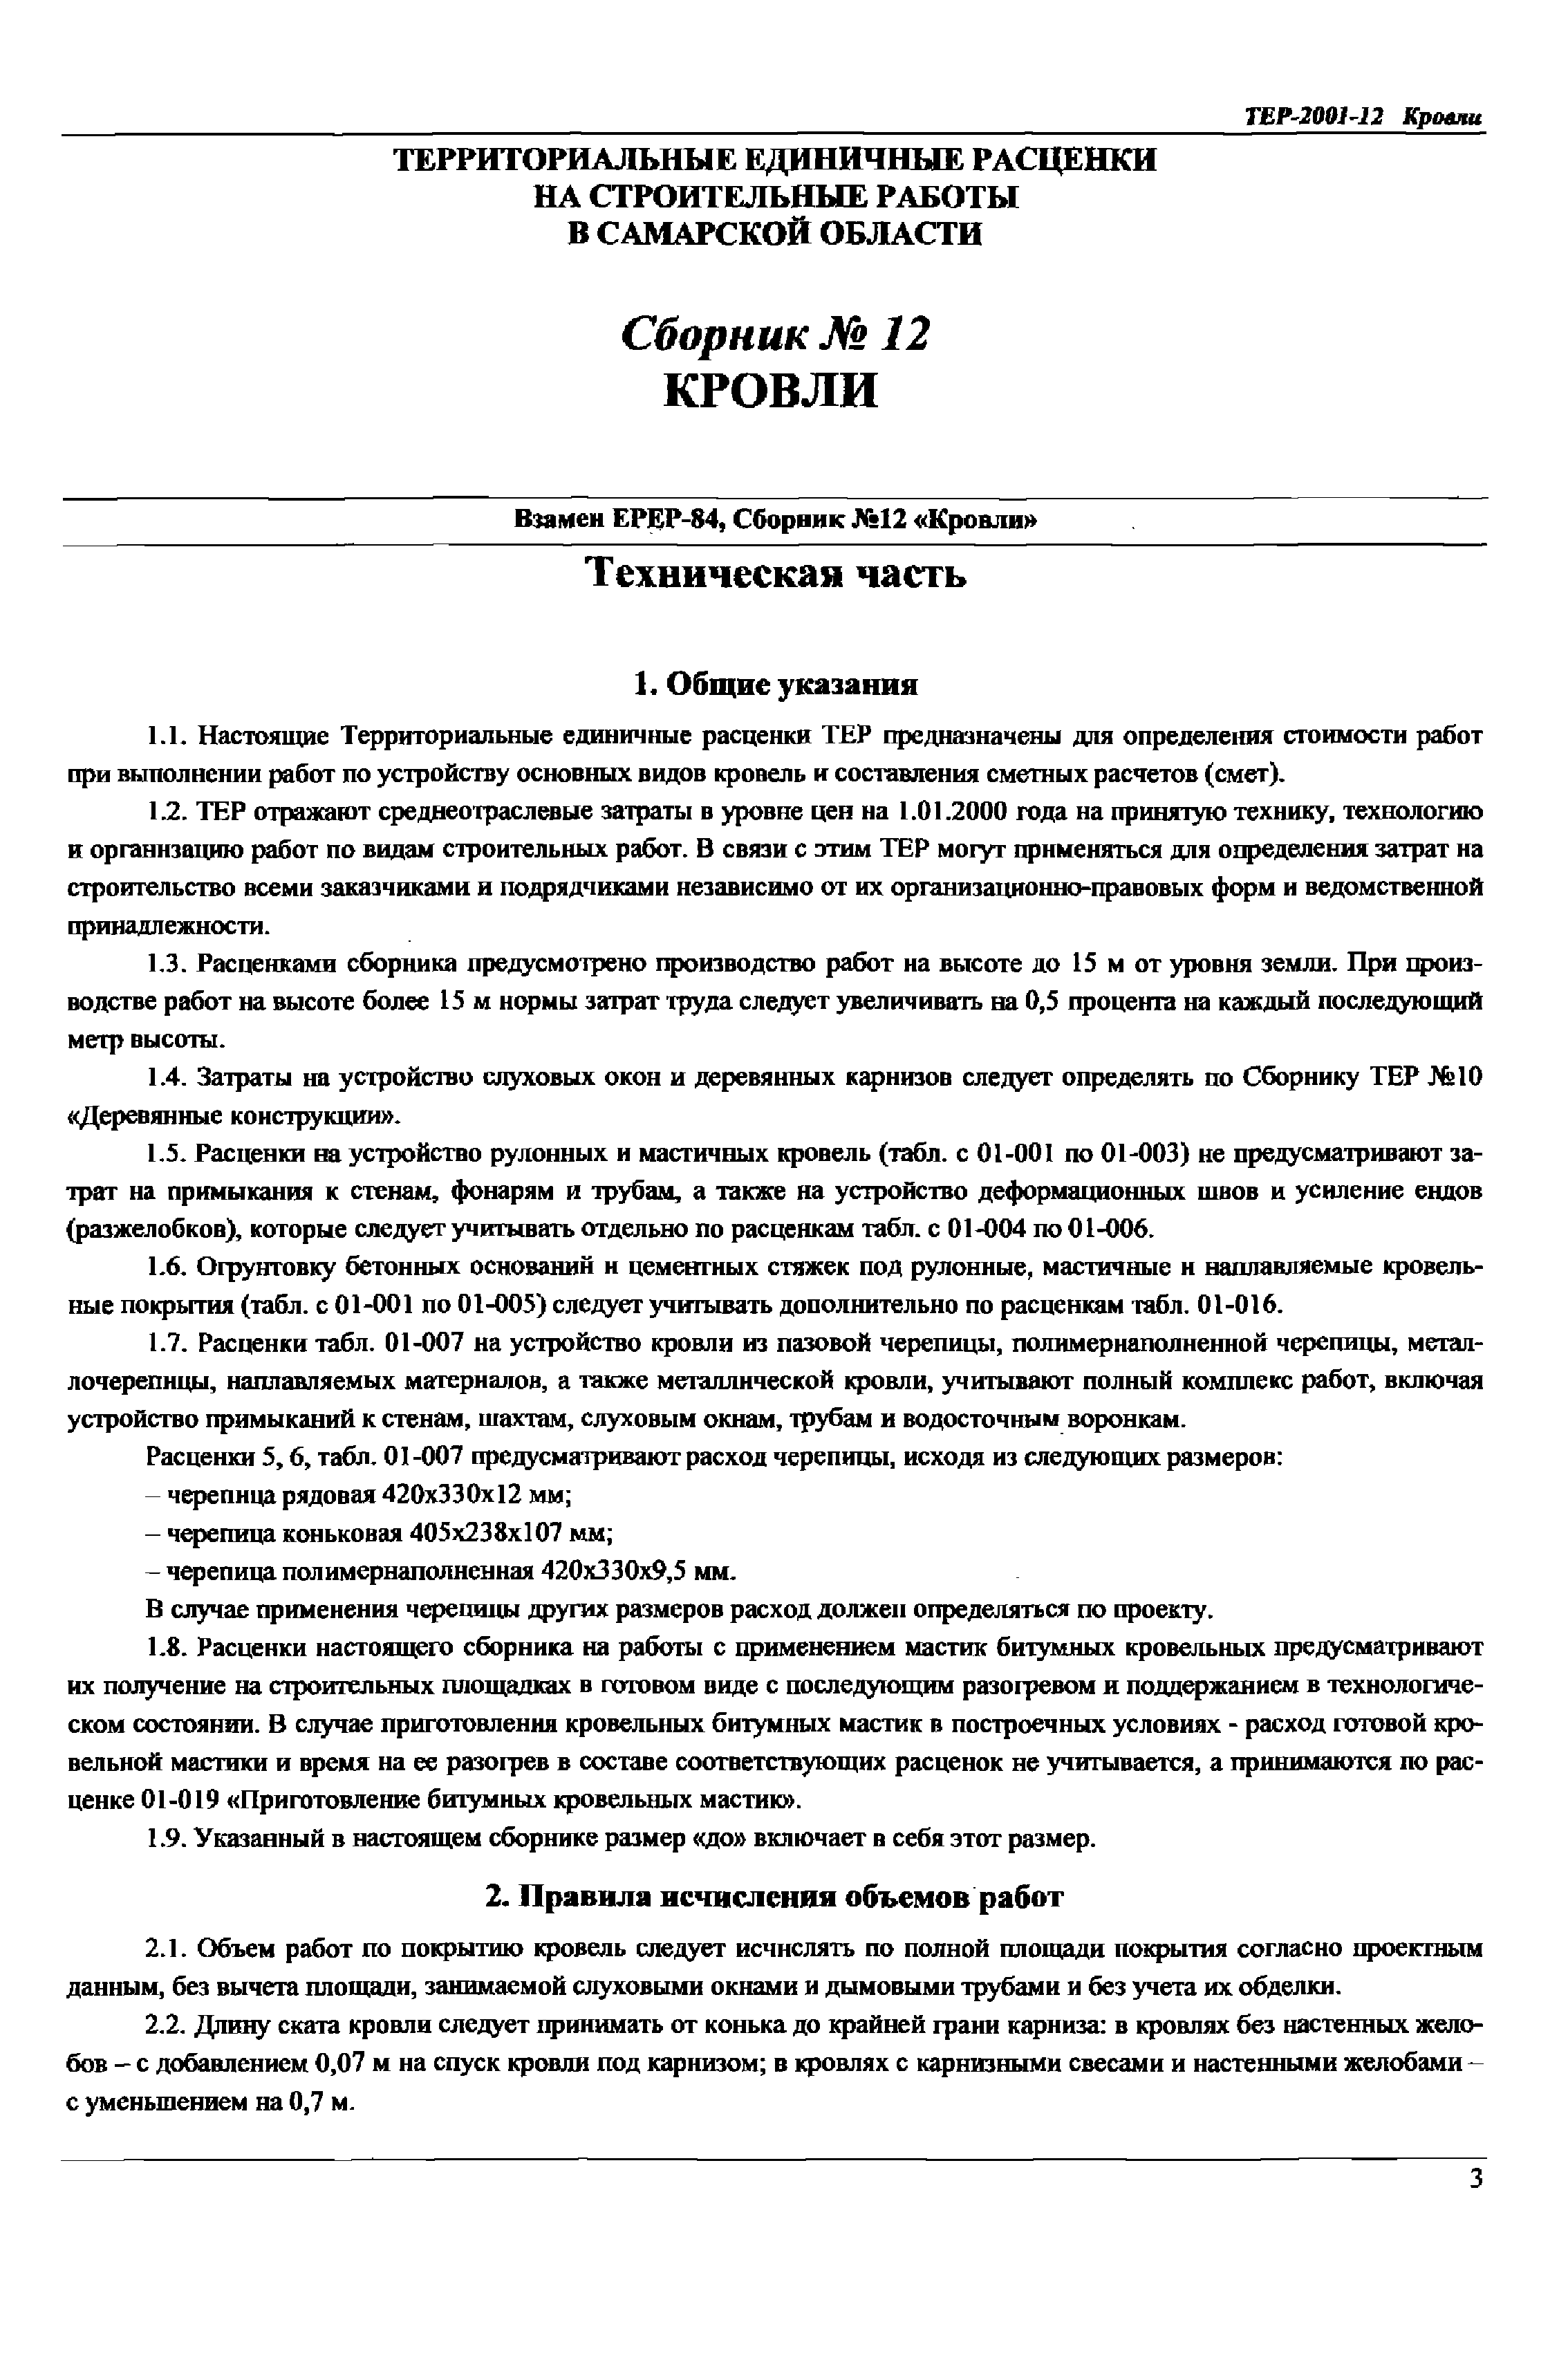 ТЕР Самарская область 2001-12